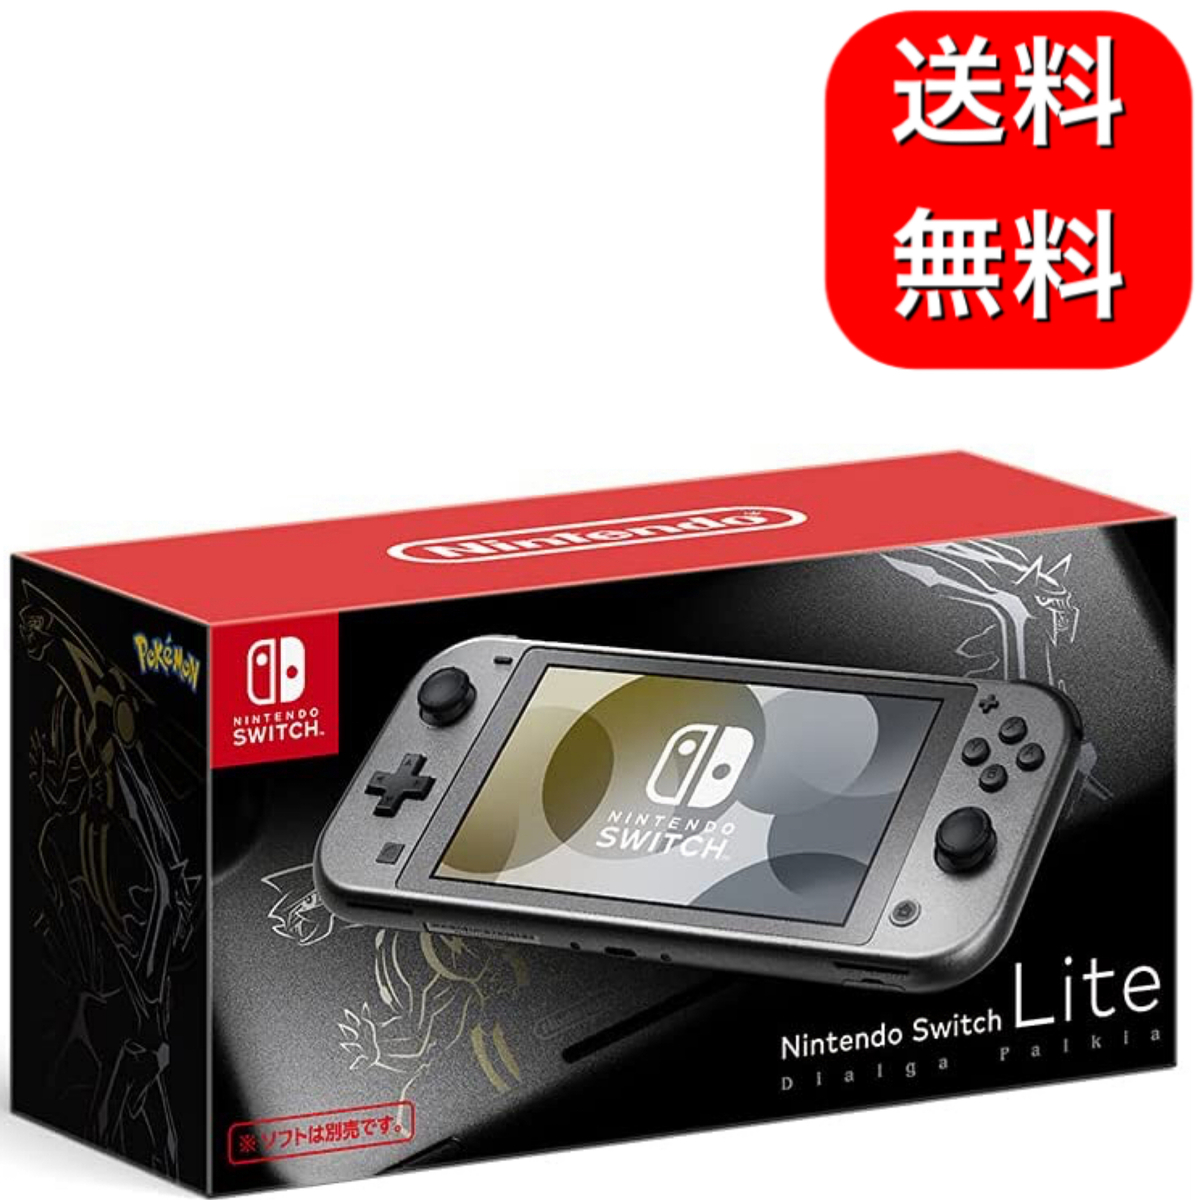 ラッピング無料 特価ブランド 全国一律送料無料 Nintendo Switch Lite ディアルガ パルキア tedbeaudry.net tedbeaudry.net